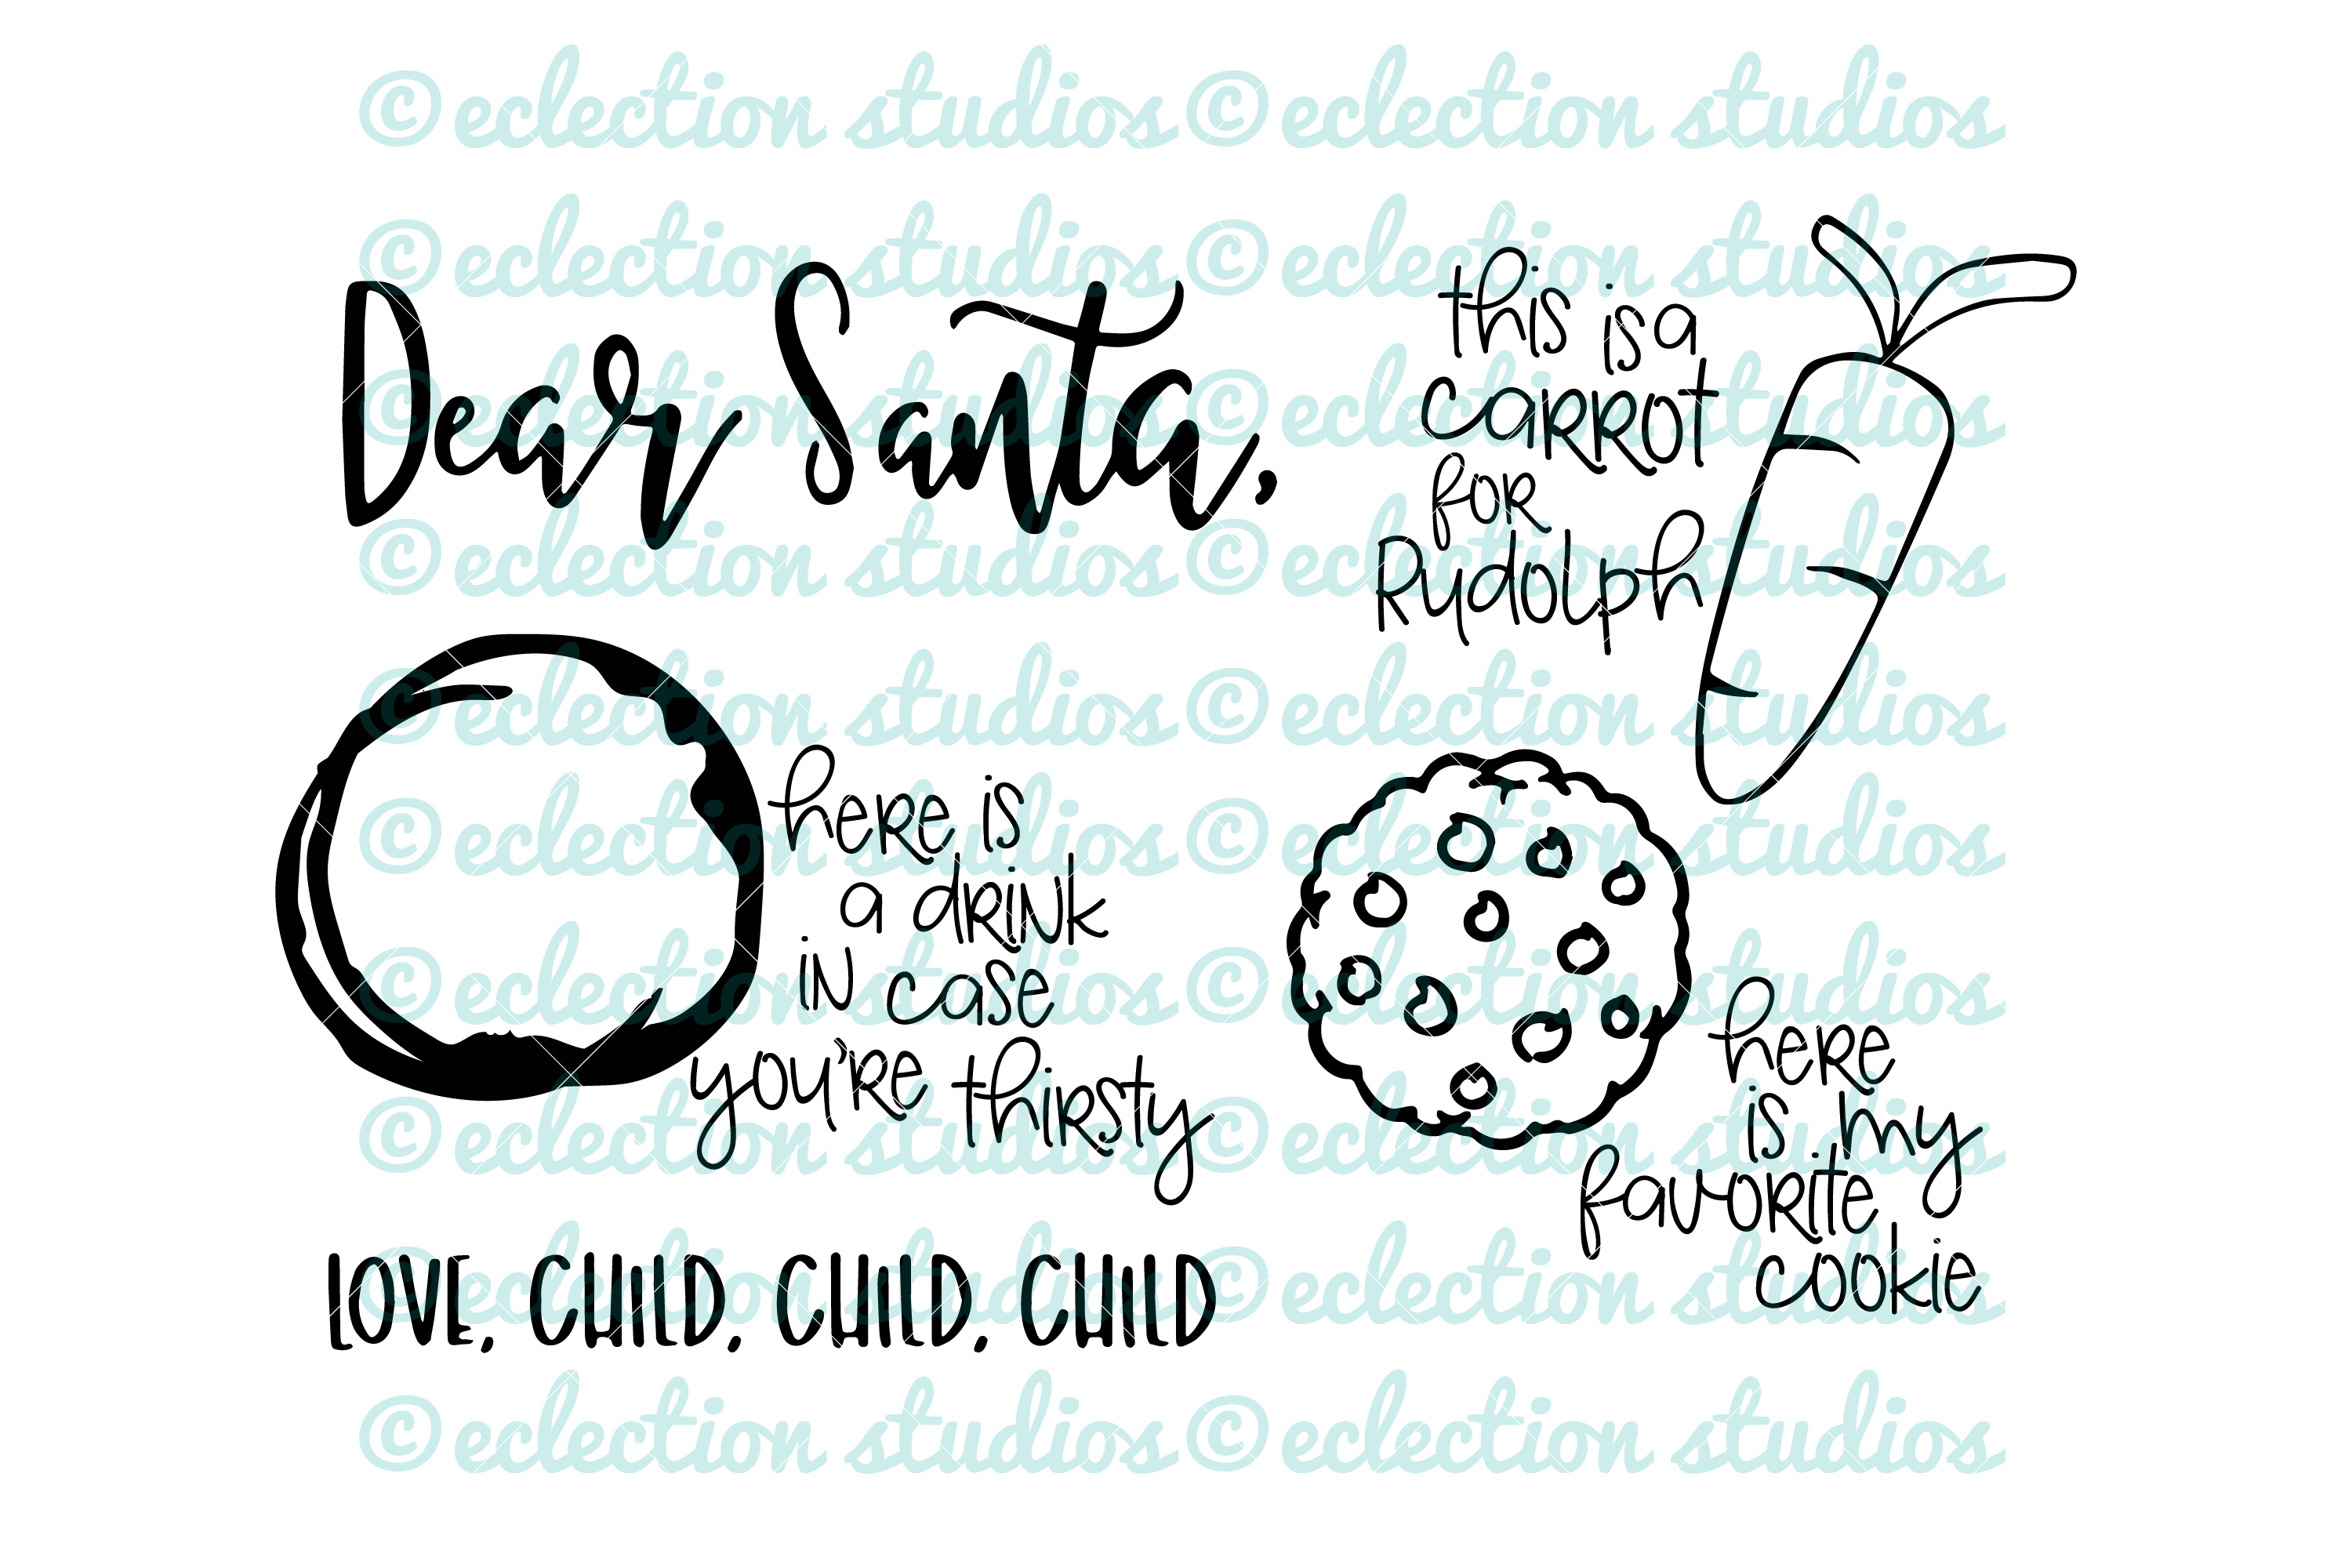 Download Dear Santa Cookies for Santa Tray SVG